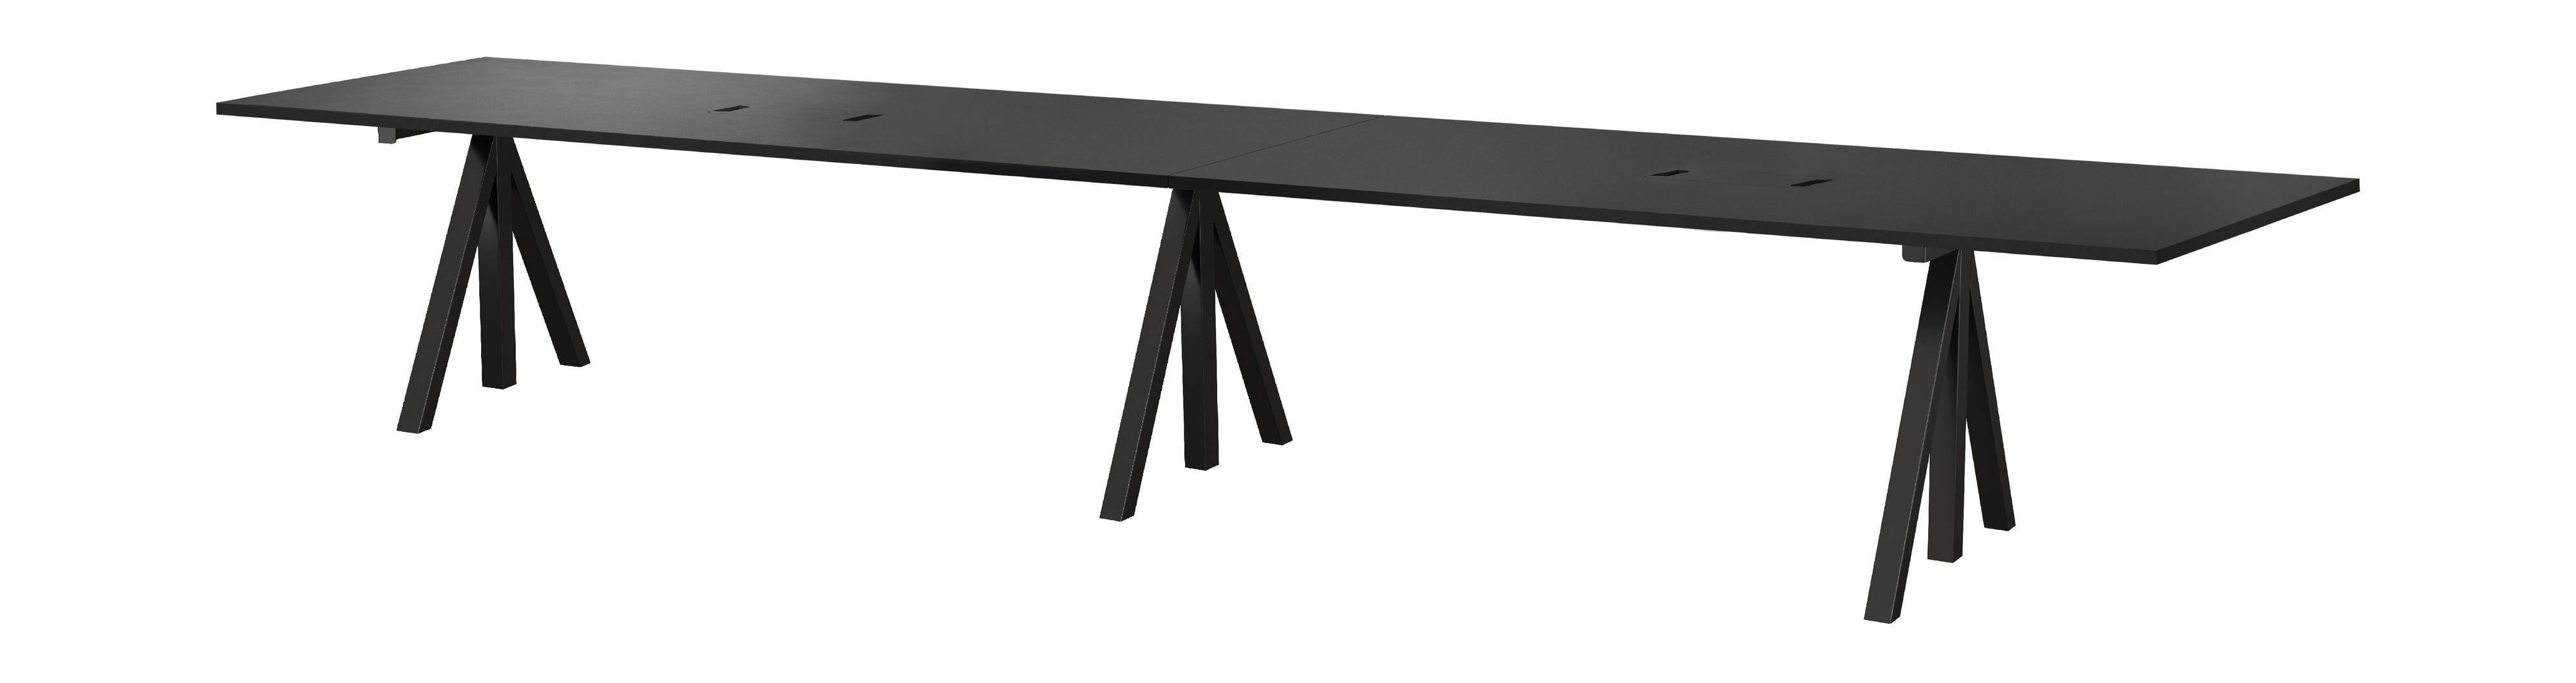 Strängmöbler höjd justerbar konferens tabell 90x180 cm, svart/svart